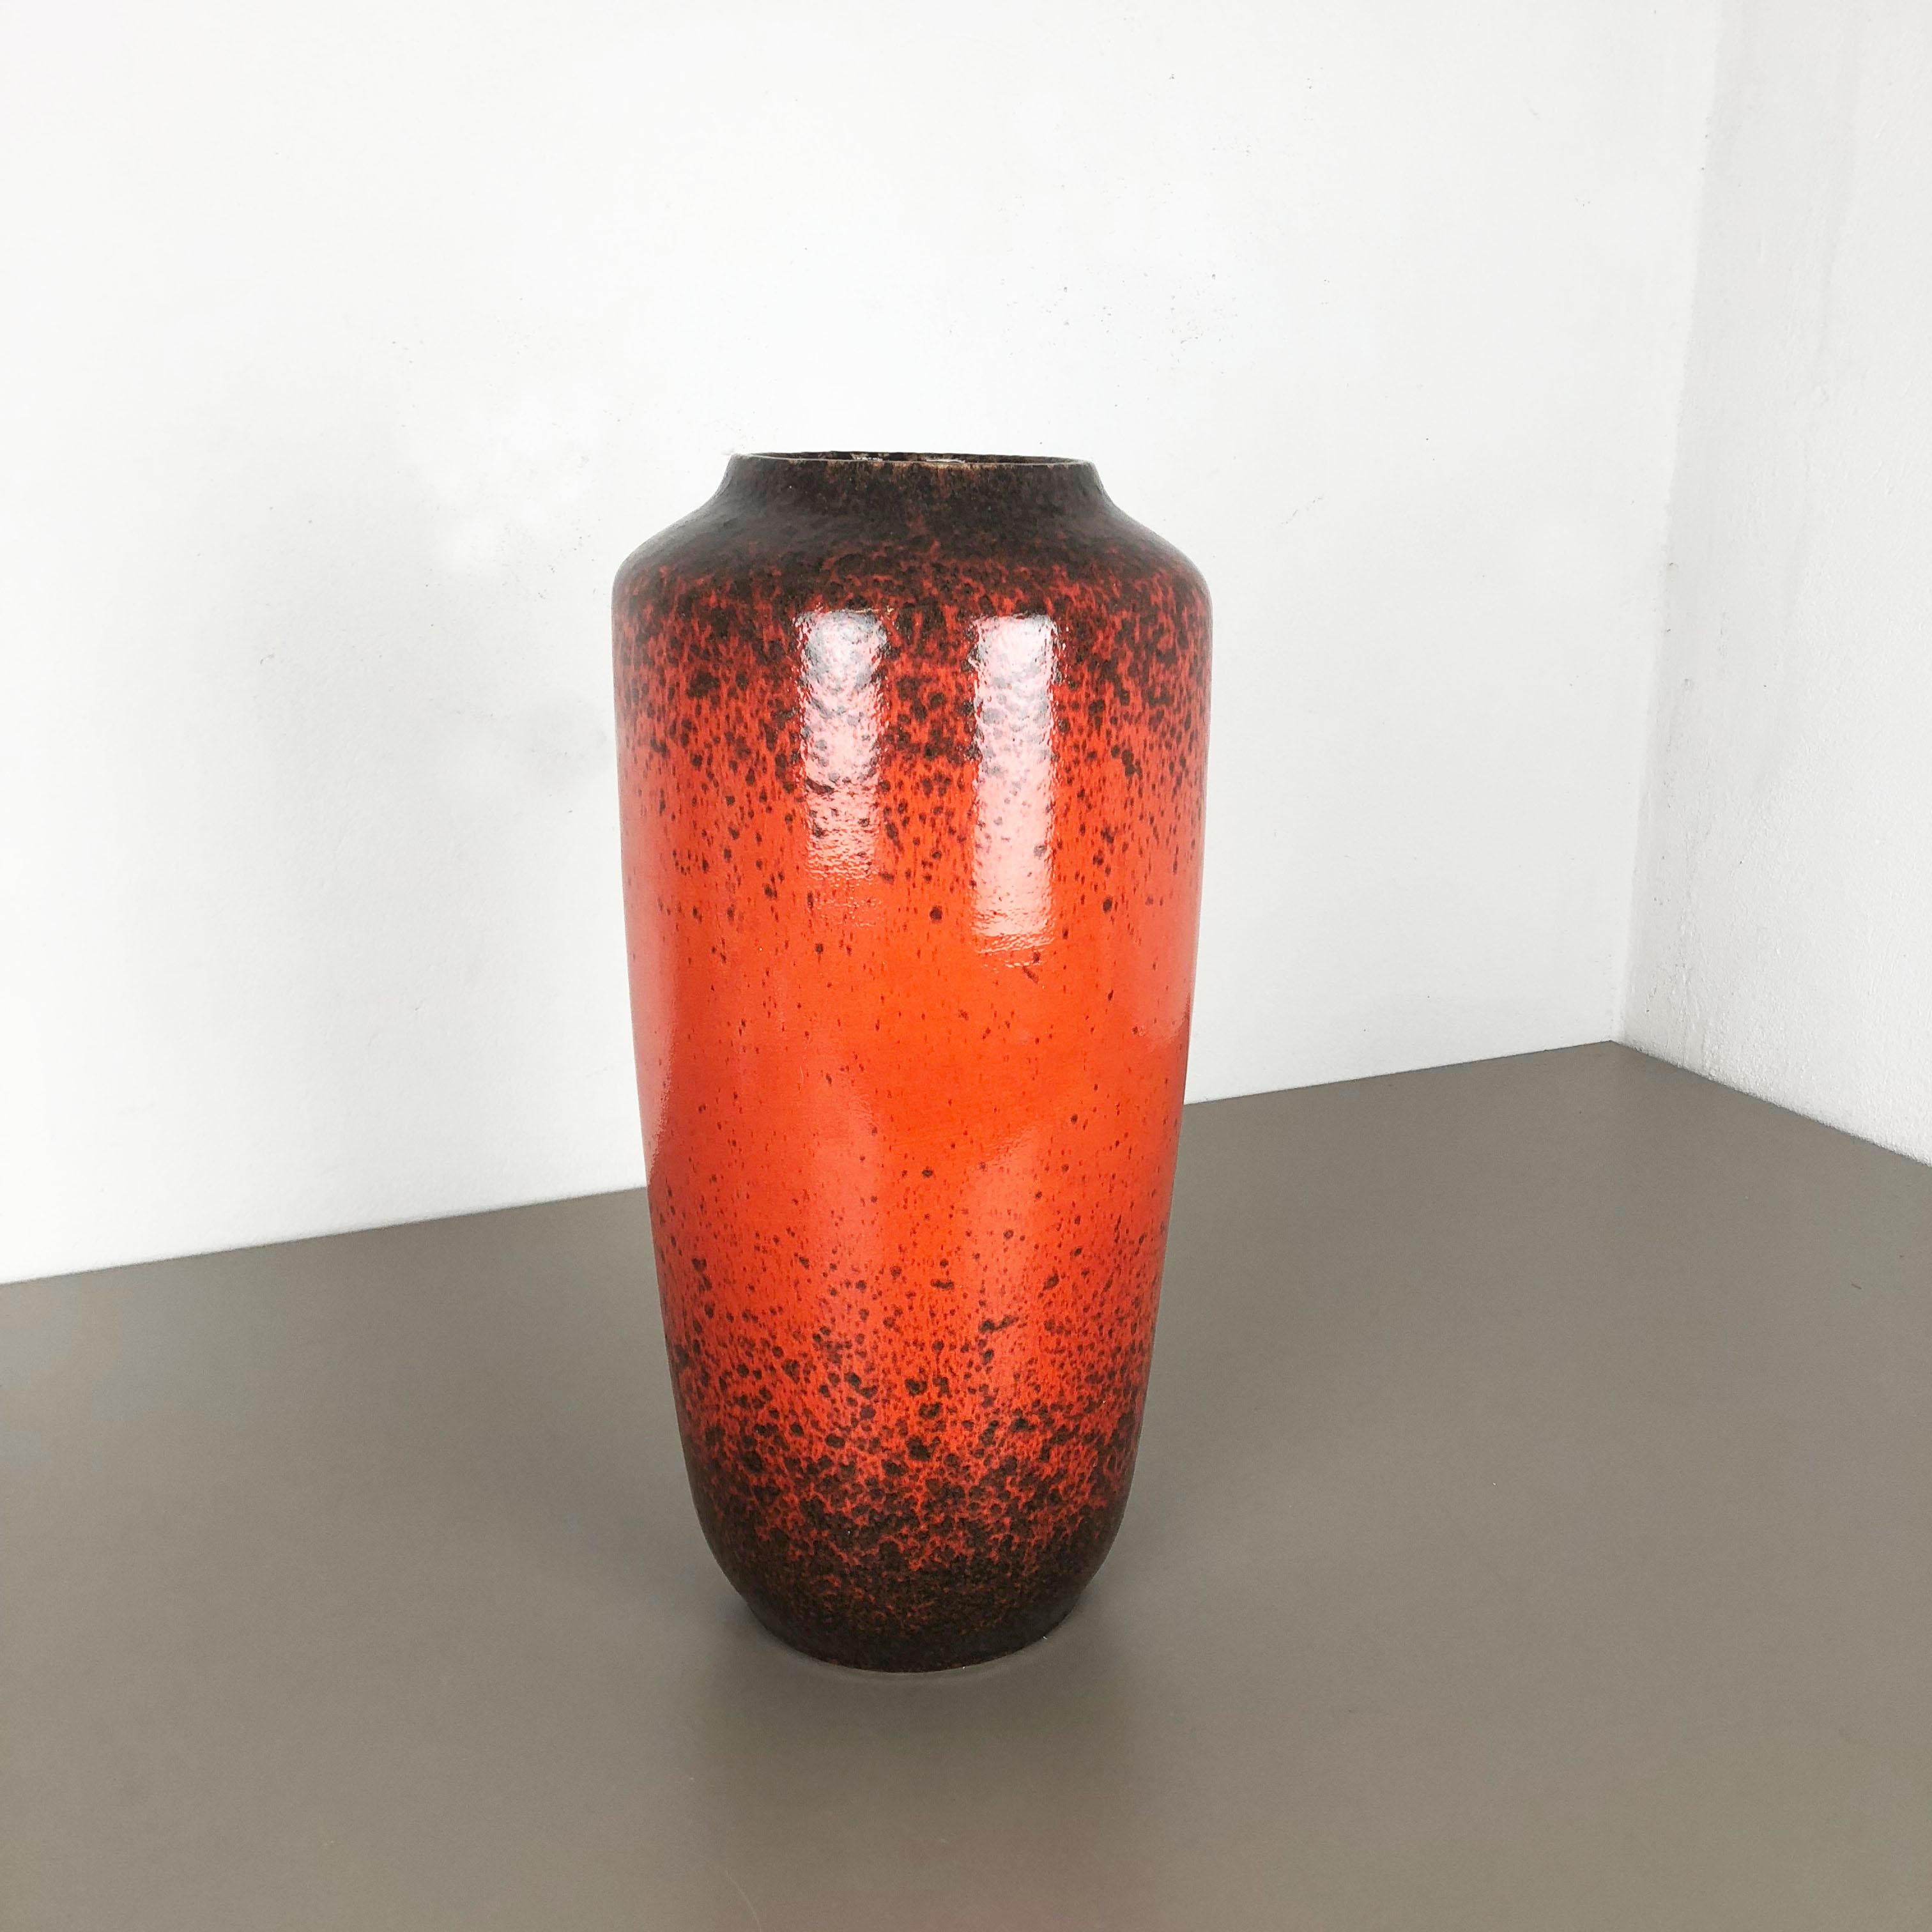 Artikel:

Fat Lava Art Vase extra große Version


Modell: 517-45


Produzent:

Scheurich, Deutschland



Jahrzehnt:

1970s




Diese originelle Vintage-Vase wurde in den 1970er Jahren in Deutschland hergestellt. Sie ist aus